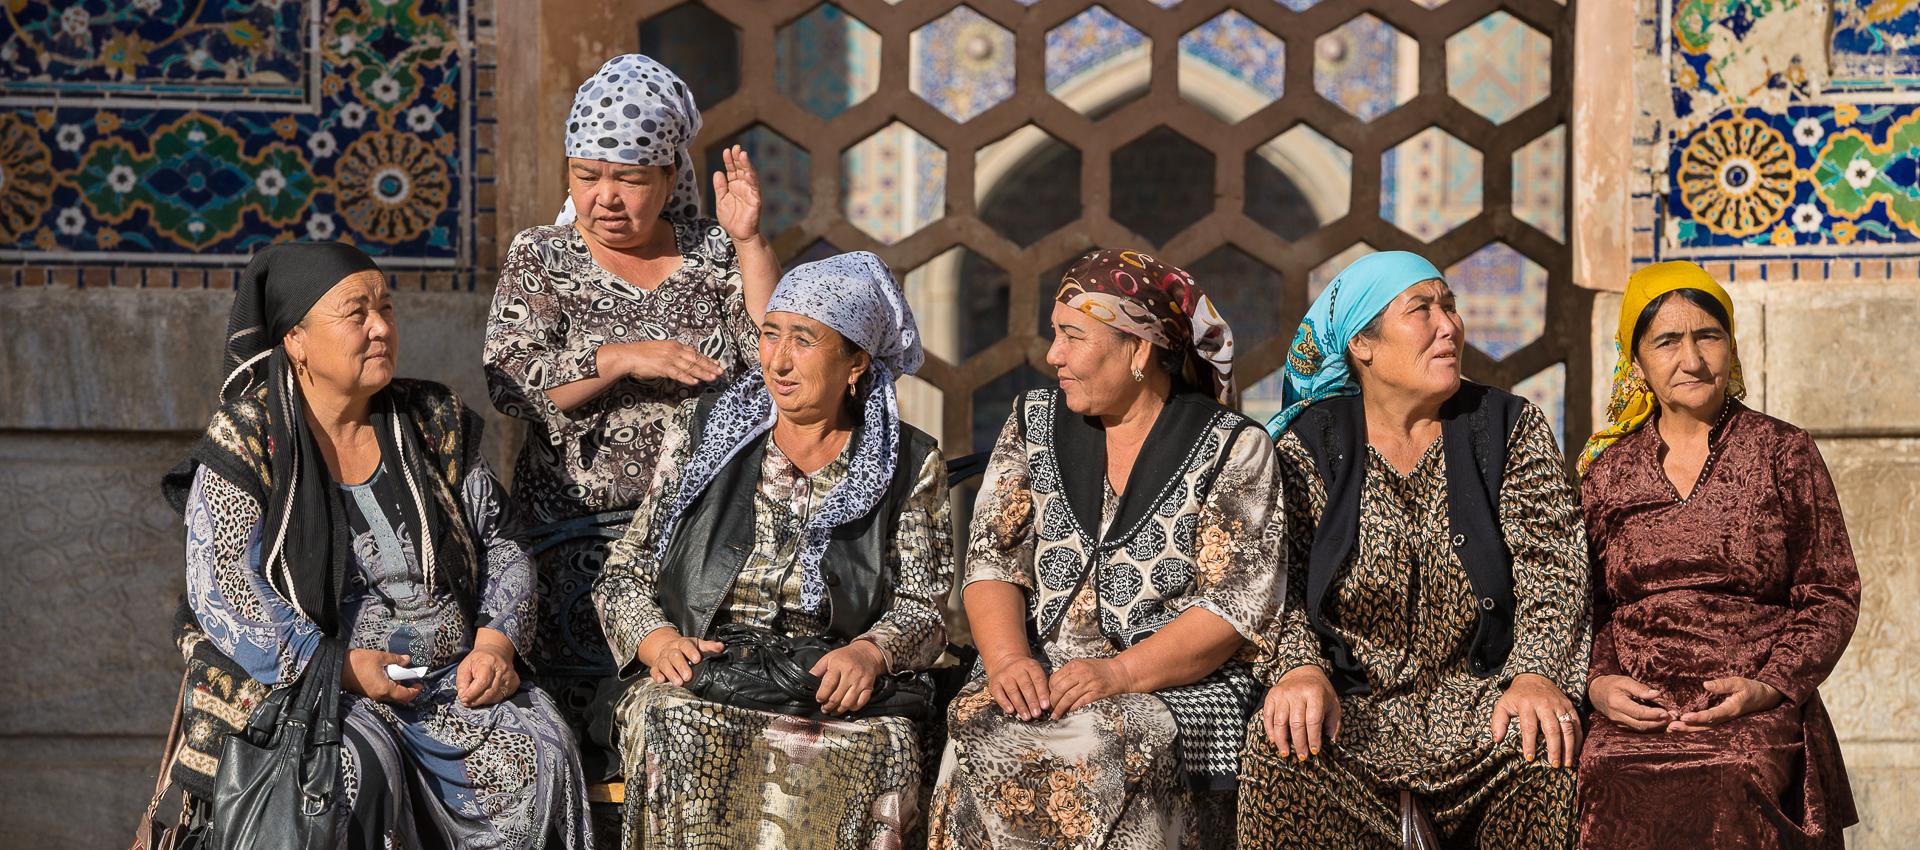 Femmes ouzbèkes